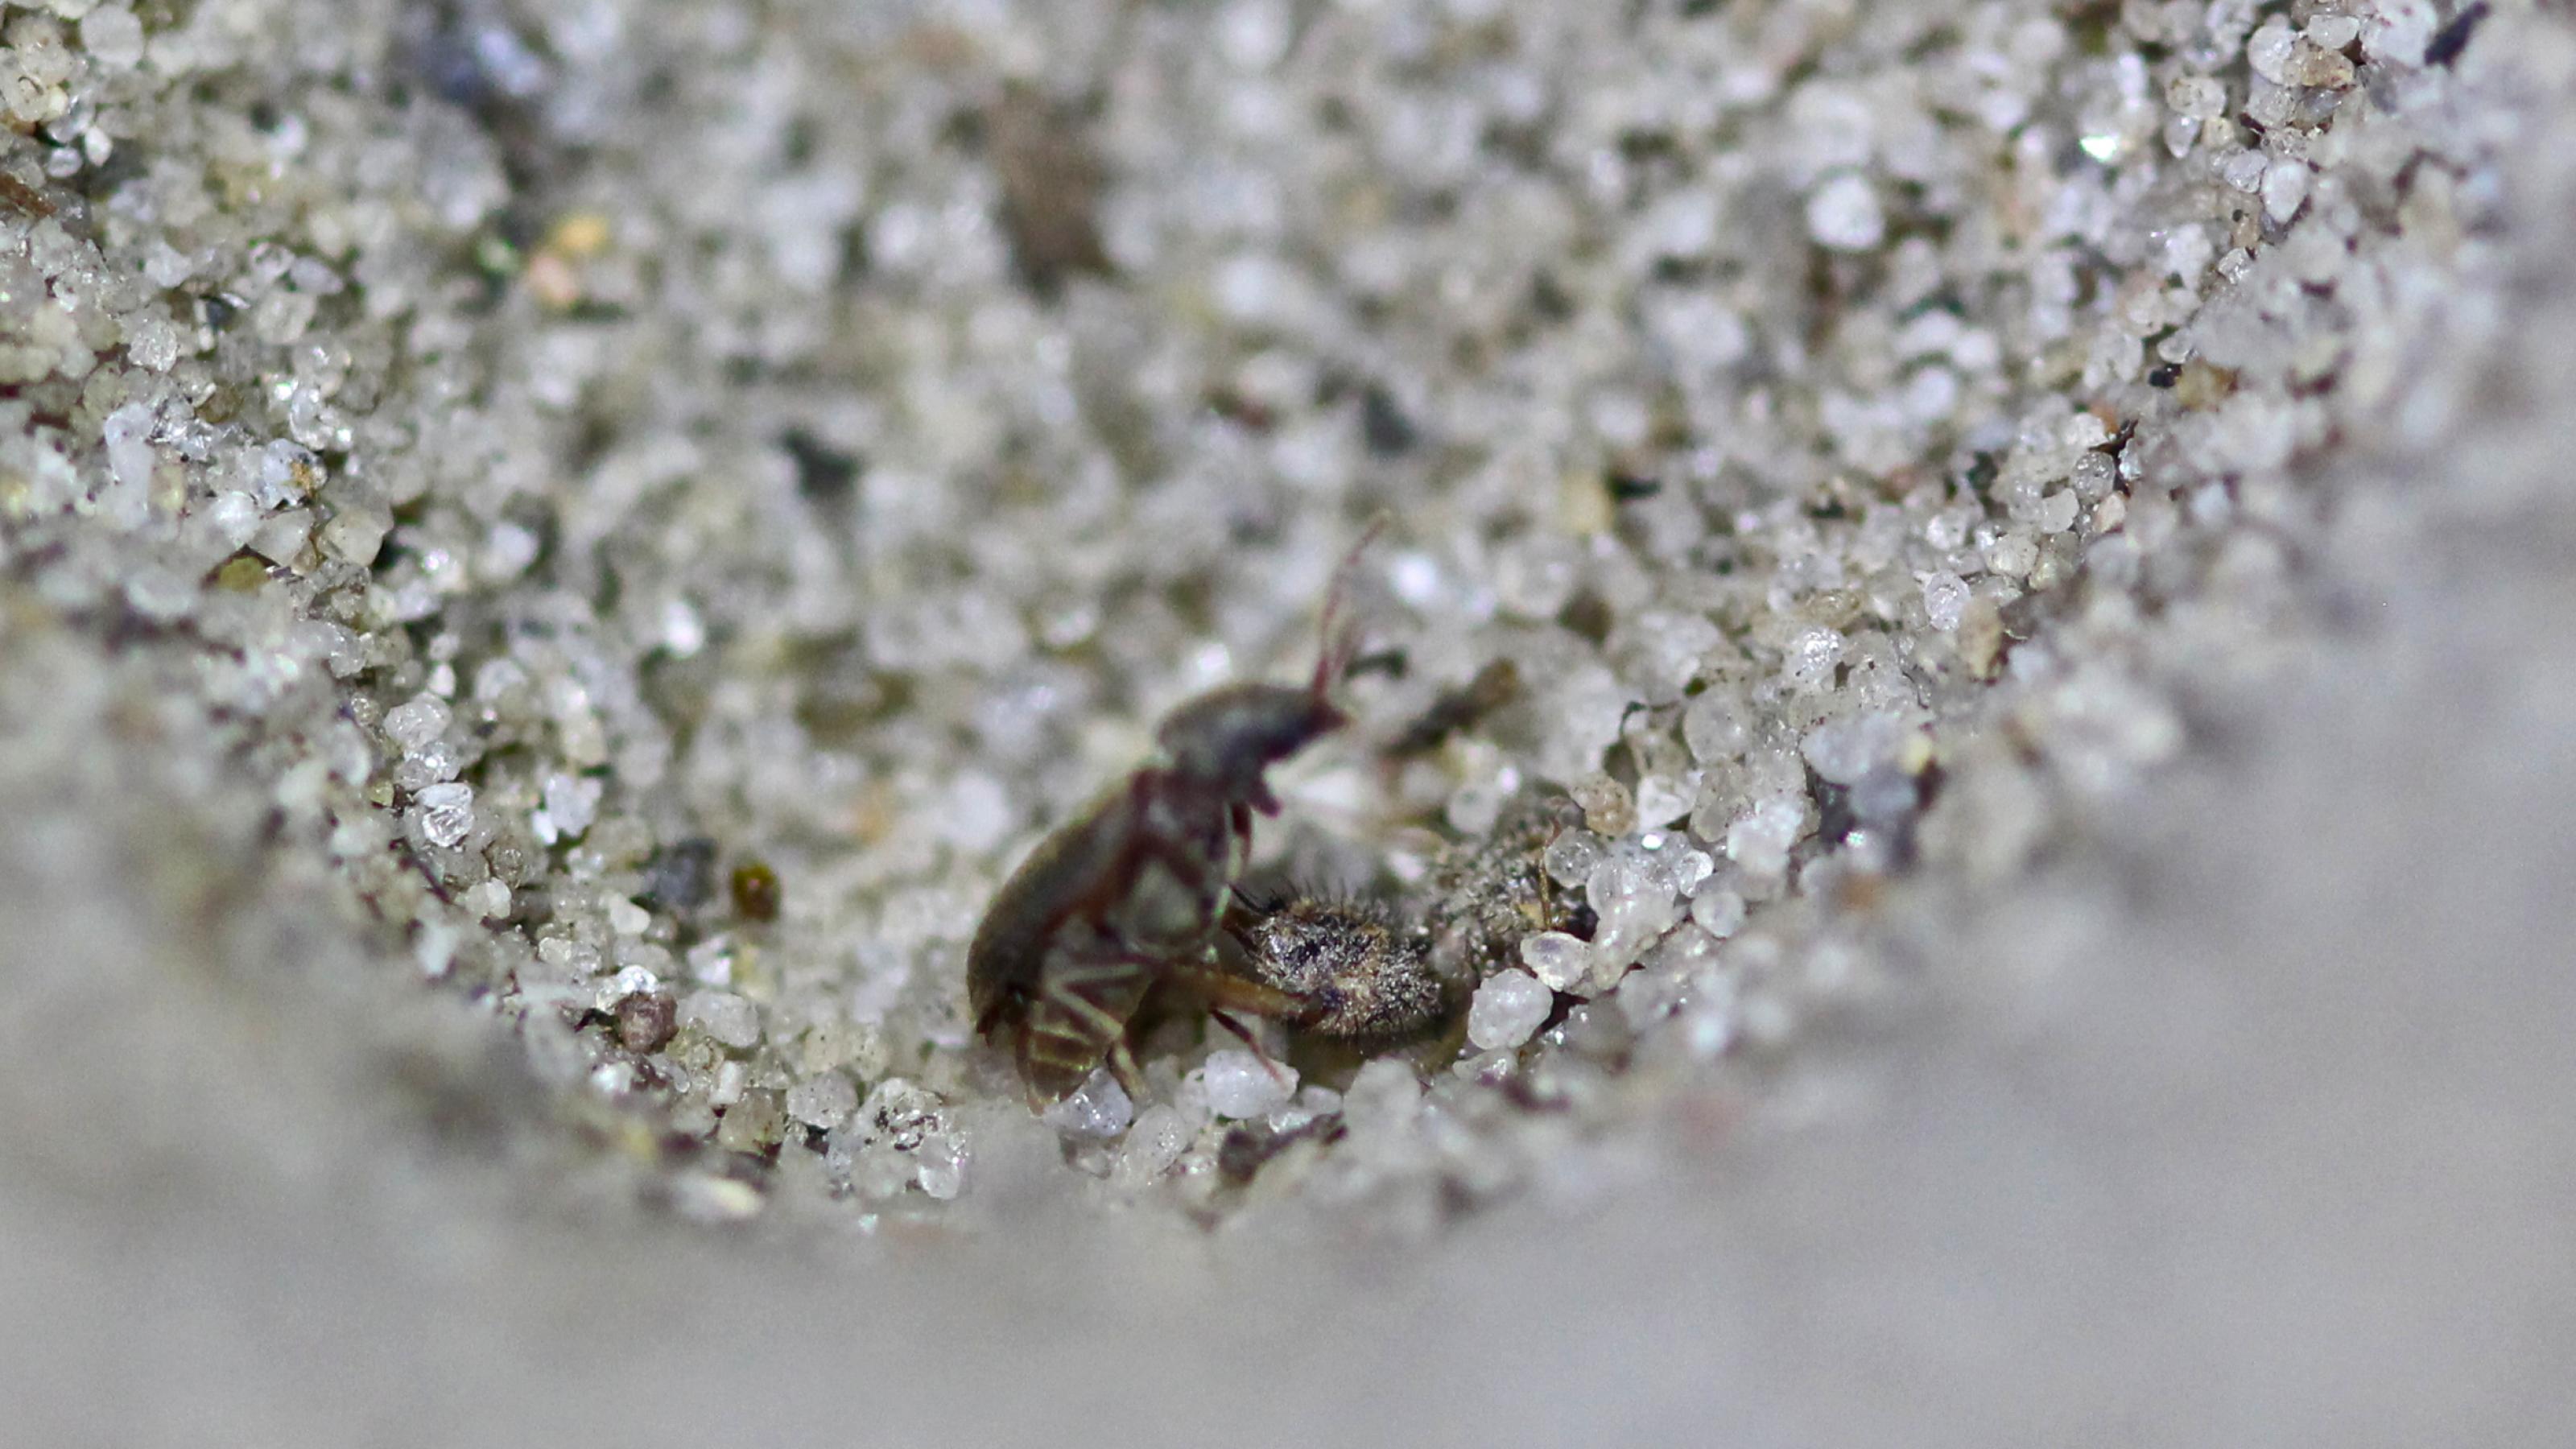 In einer Kuhle ragt ein Insektenkopf mit kräftigen Greifzangen aus dem Sand. Die Zangen umklammern einen kleinen, bräunlichen Käfer.